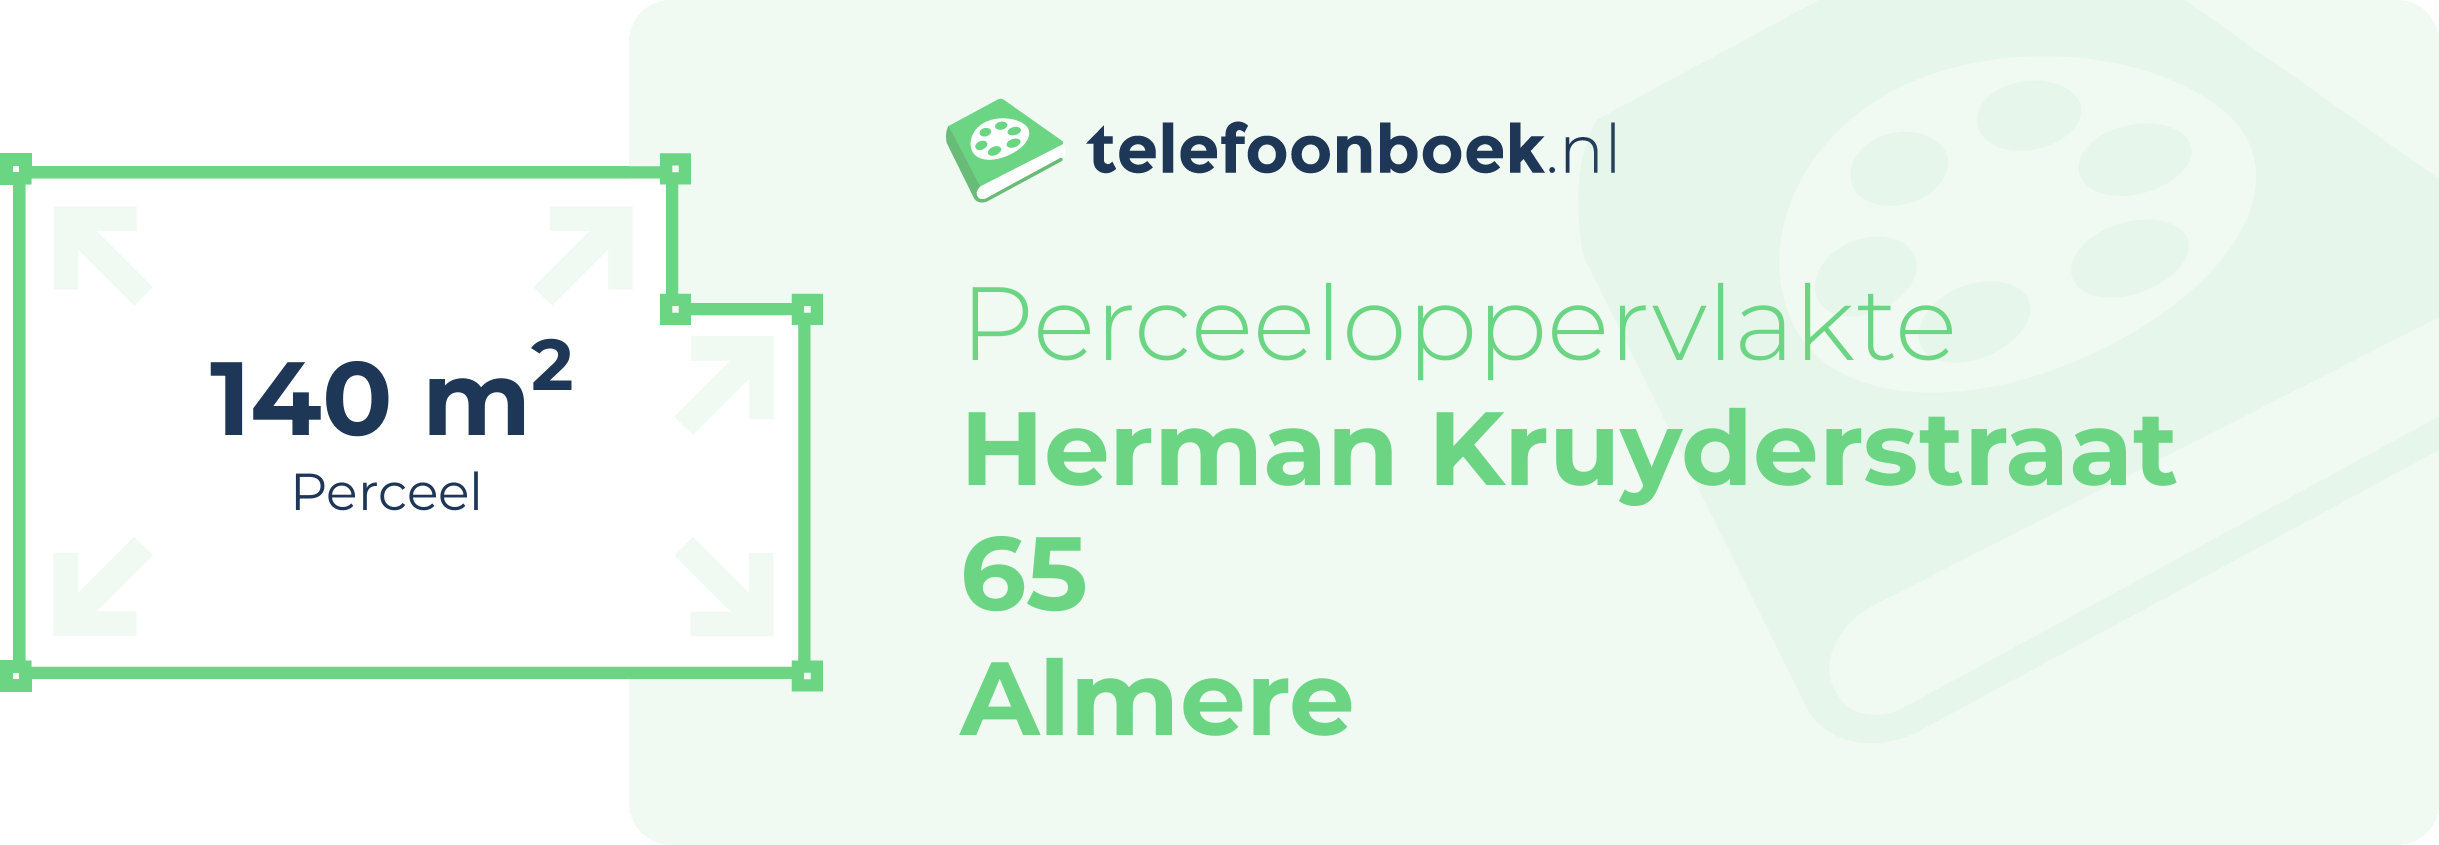 Perceeloppervlakte Herman Kruyderstraat 65 Almere